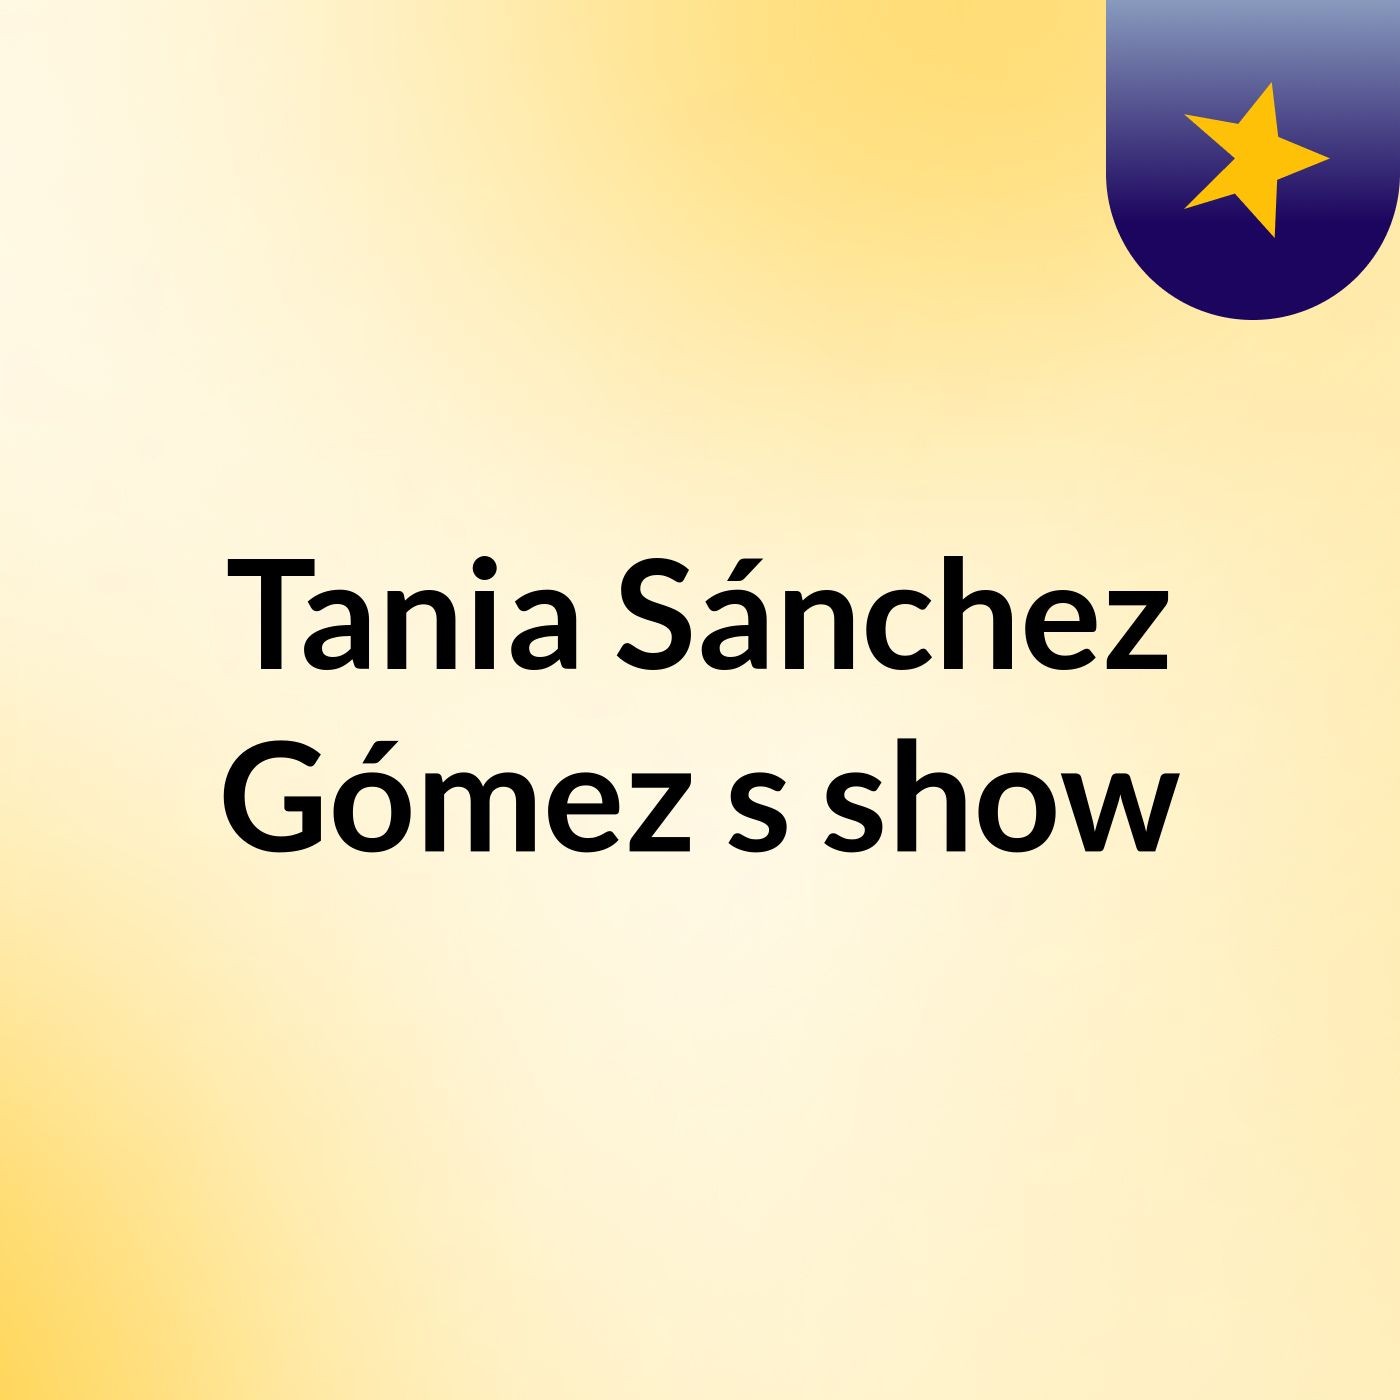 Tania Sánchez Gómez's show